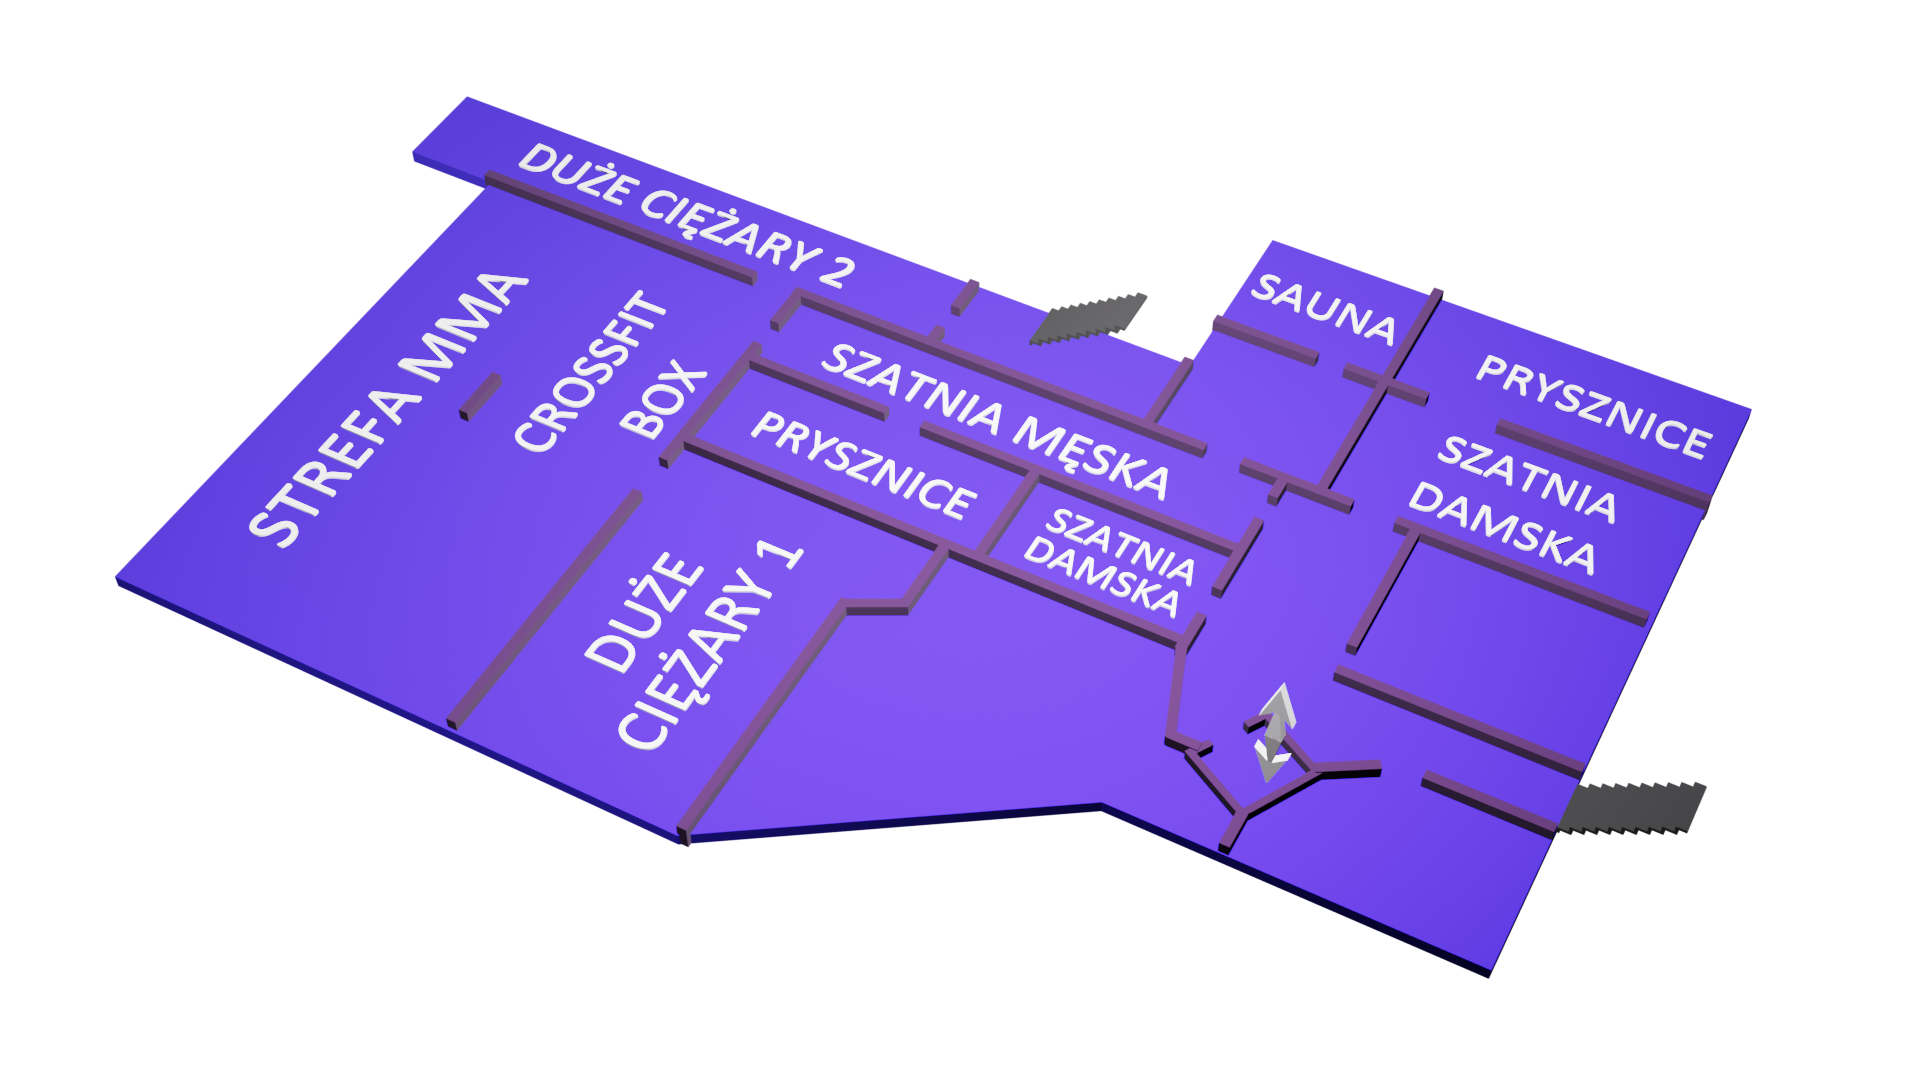 Mapa 3D wybranego piętra klubu INFINITI, wraz z nazwami konkretnych miejsc na piętrze - aktualnie widać poziom minus pierwszy